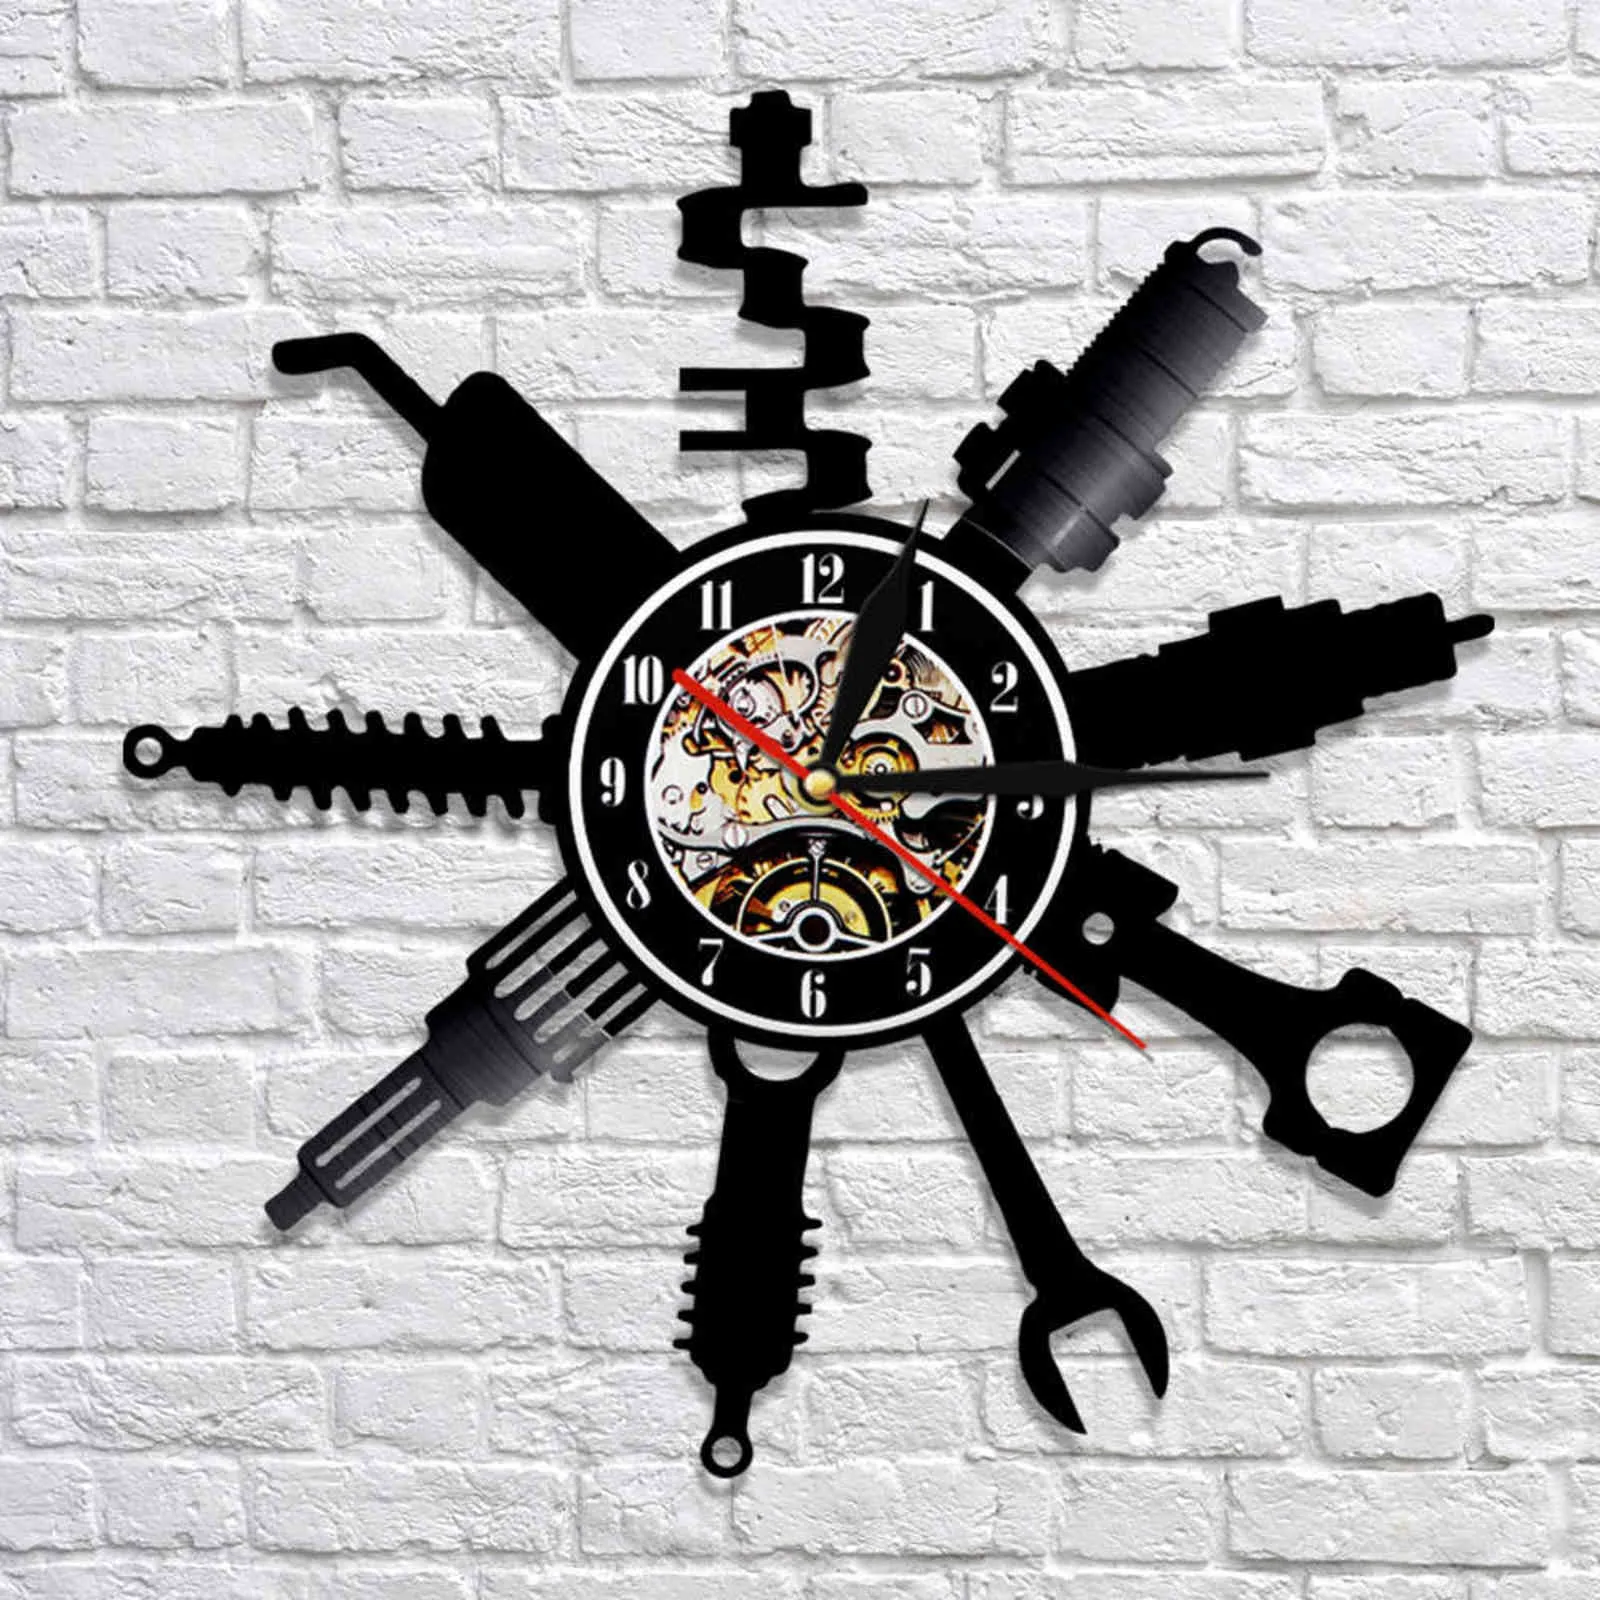 Auto Reparação da Oficina de Reparação da parede Sign da parede Decorativa Modern Wall Clock Mechanic Service Workshop Relógio Relógio Reparador do Reparador 211243T1530341